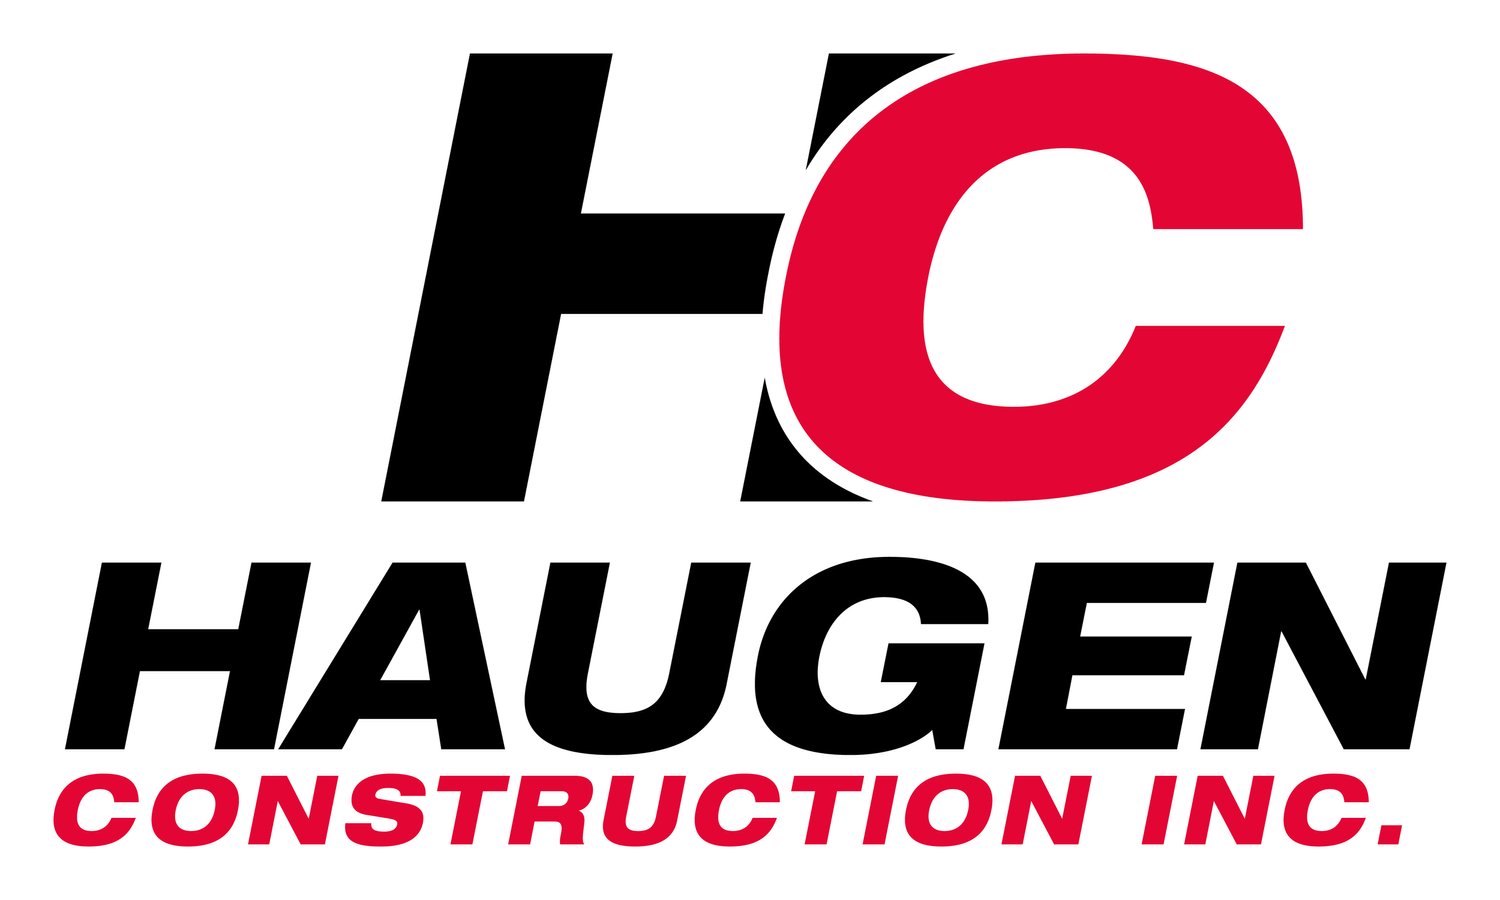 Haugen Construction